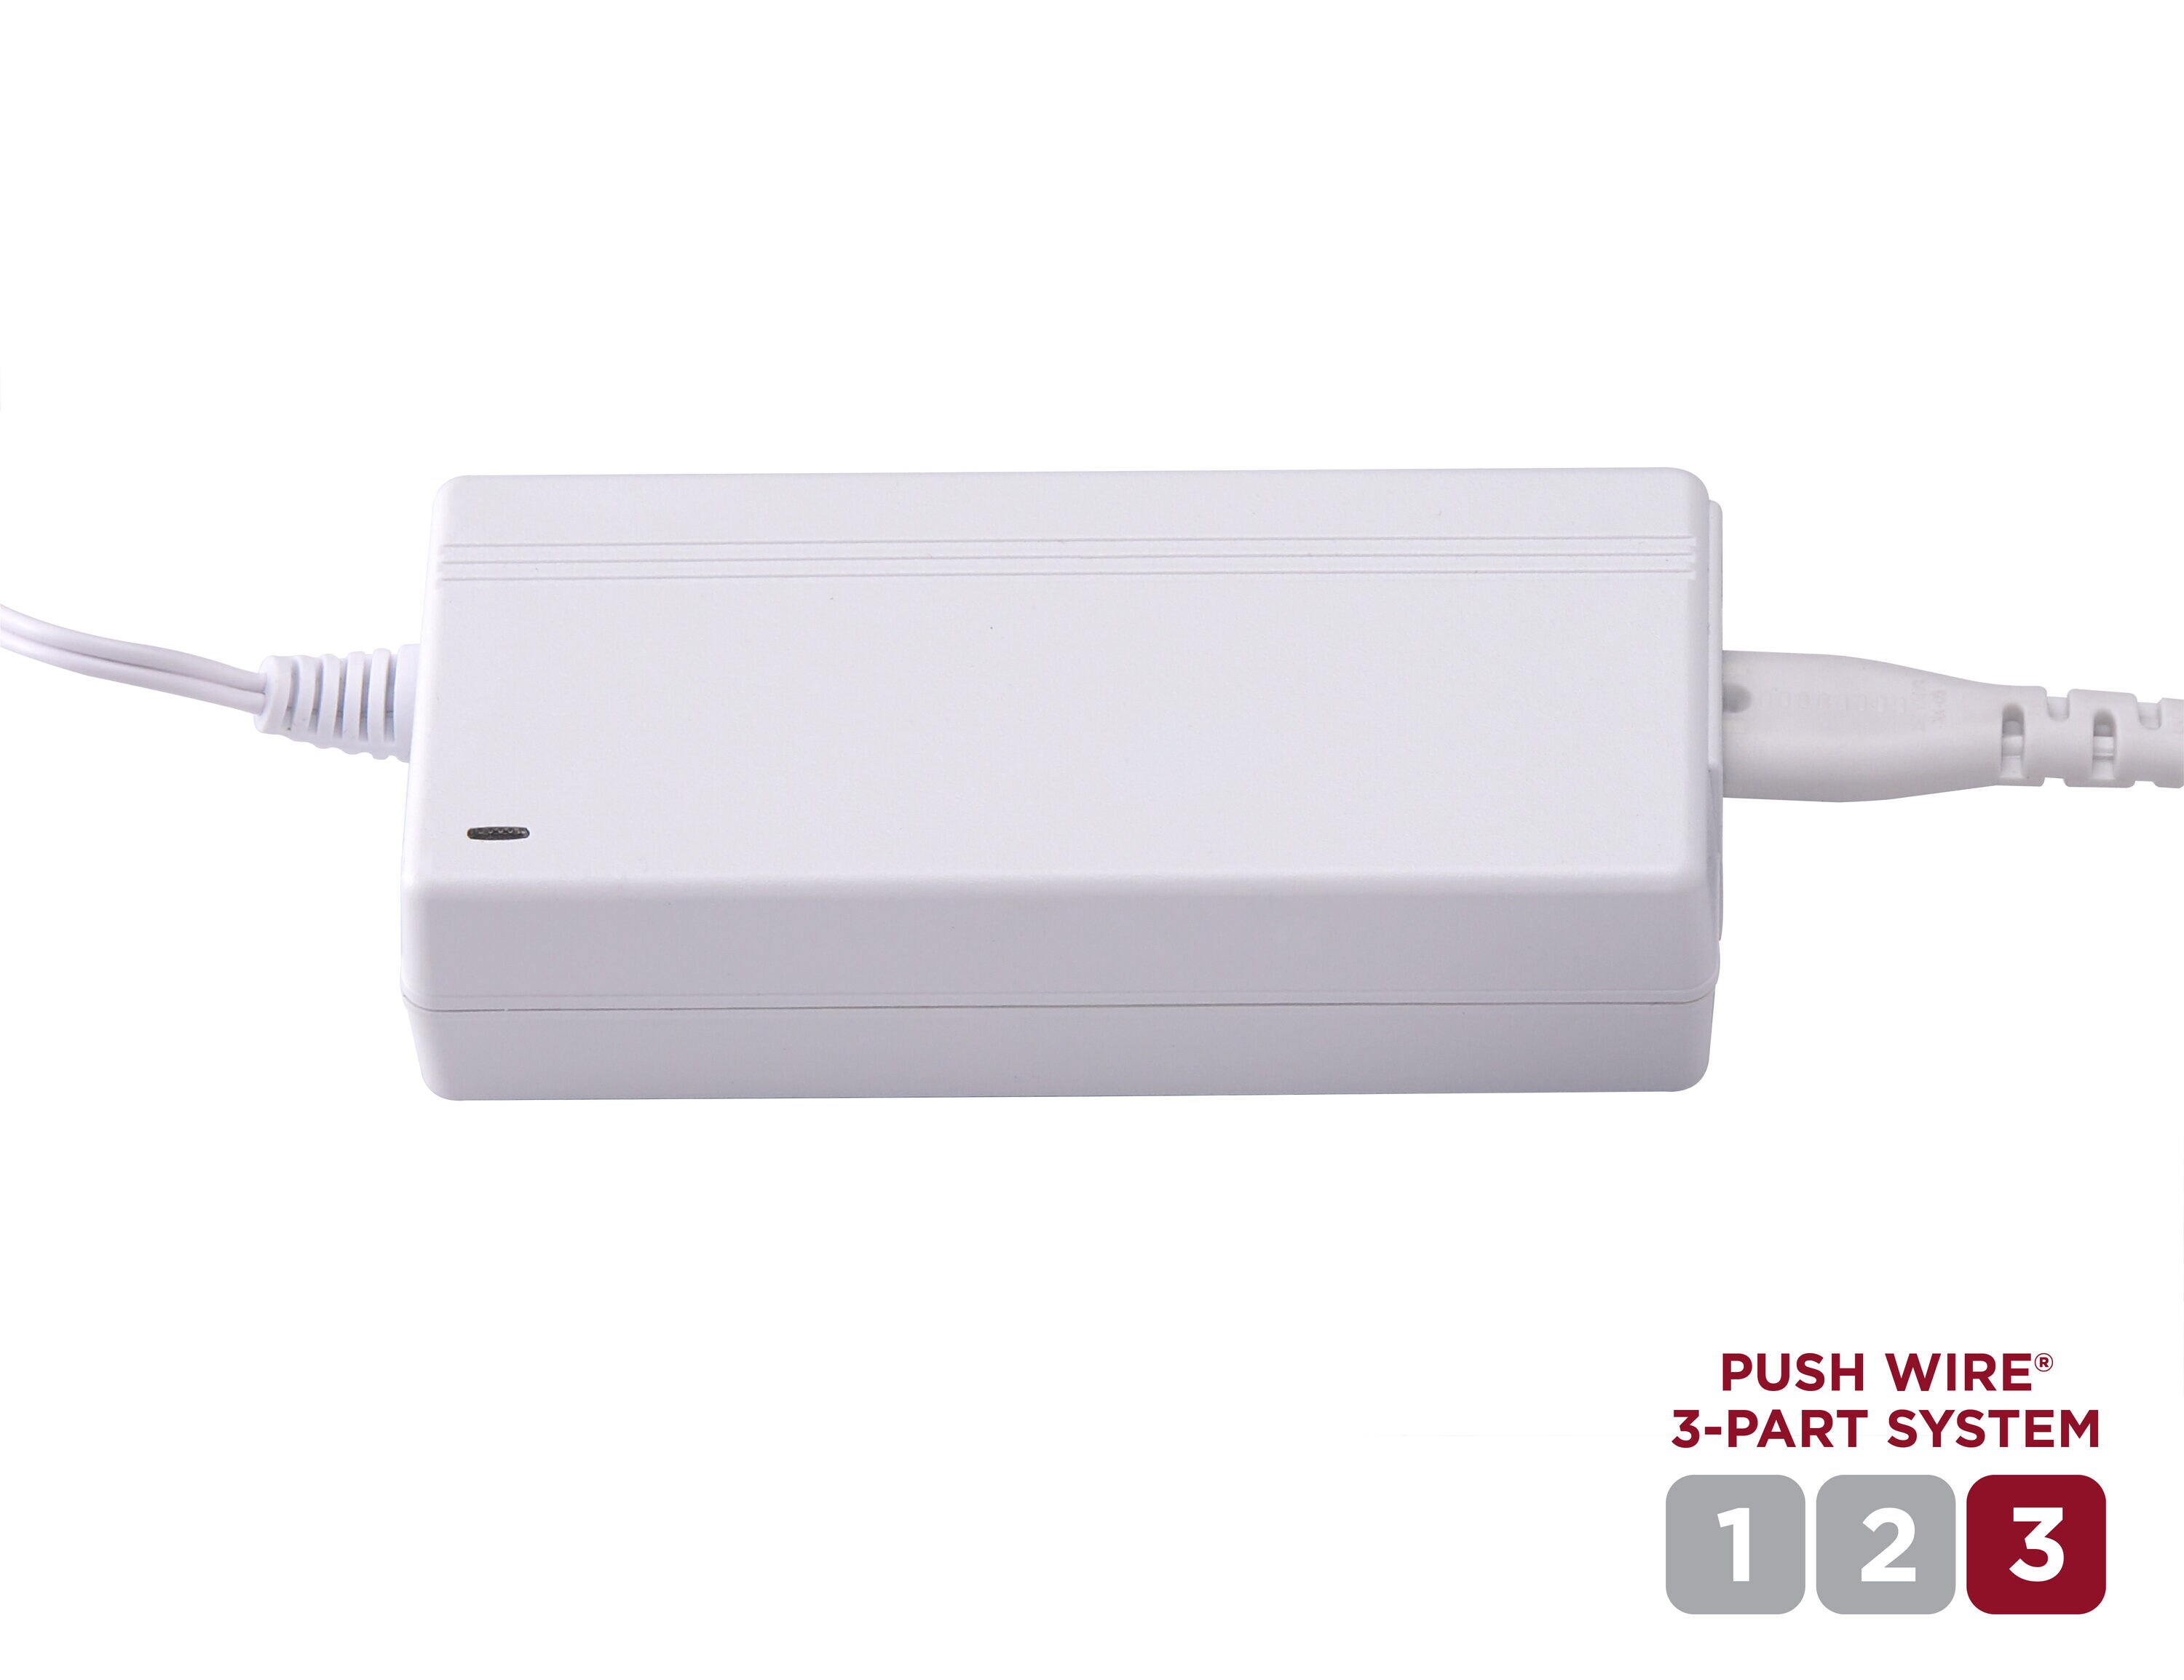 Black+decker Push Wire 9-Inch Under-Cabinet Light Bar, Cool White